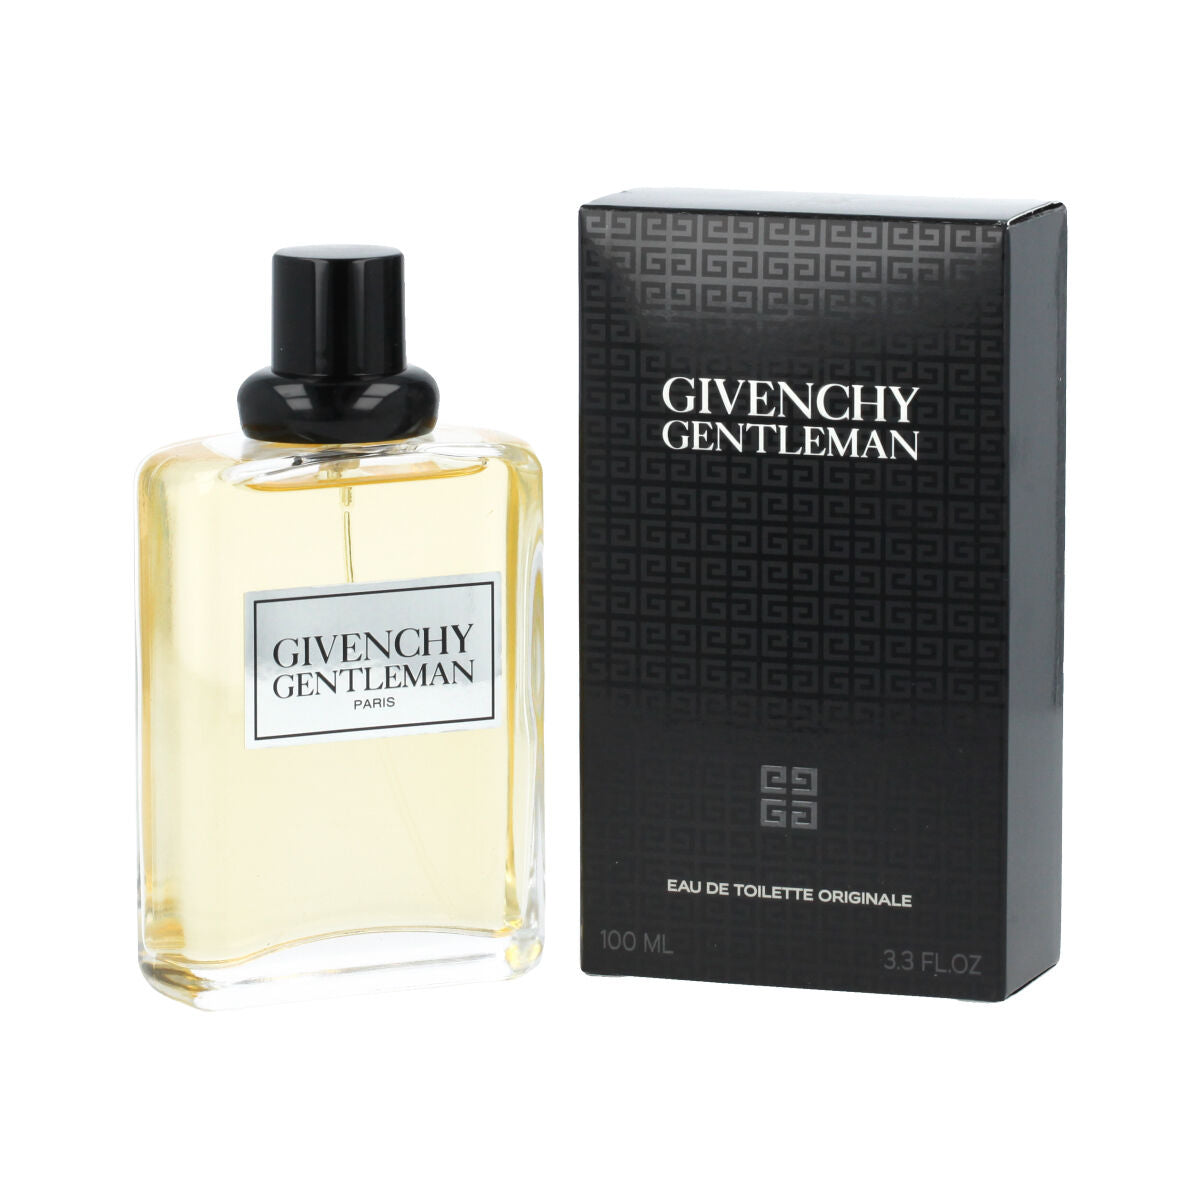 Parfum Homme Givenchy EDT Gentleman 100 ml